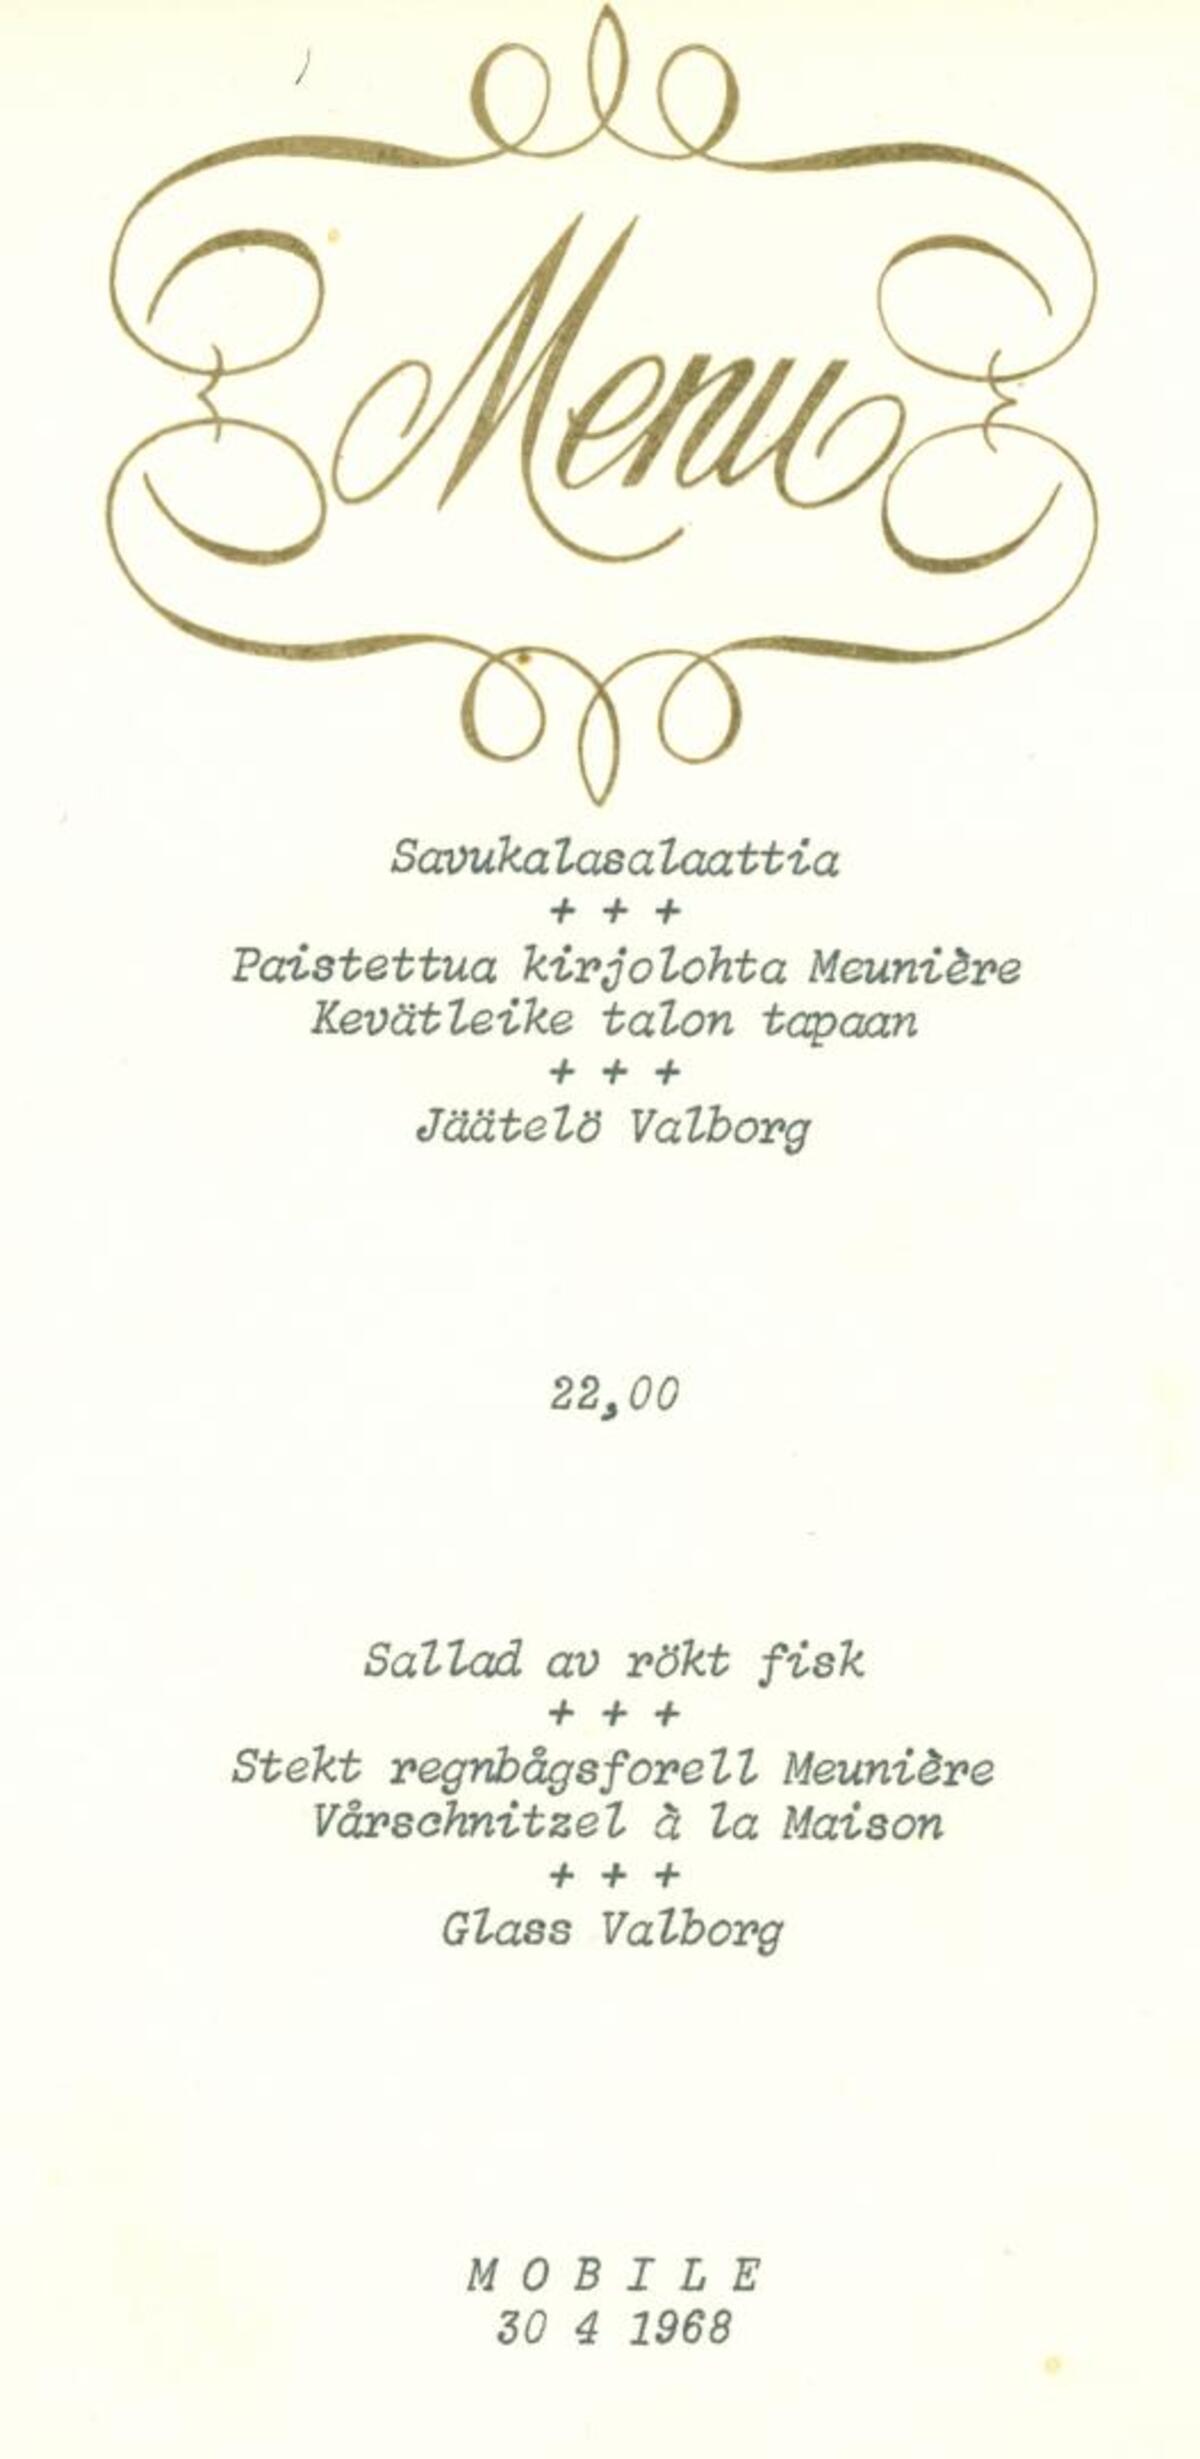 Ravintoloissa järjestettiin myös vappuaaton illallisia ainakin vielä 1960-luvulla. Sittemmin juhlimisen painopiste on siirtynyt vapunpäivään. Kuvaaja: Hotelli- ja ravintolamuseo